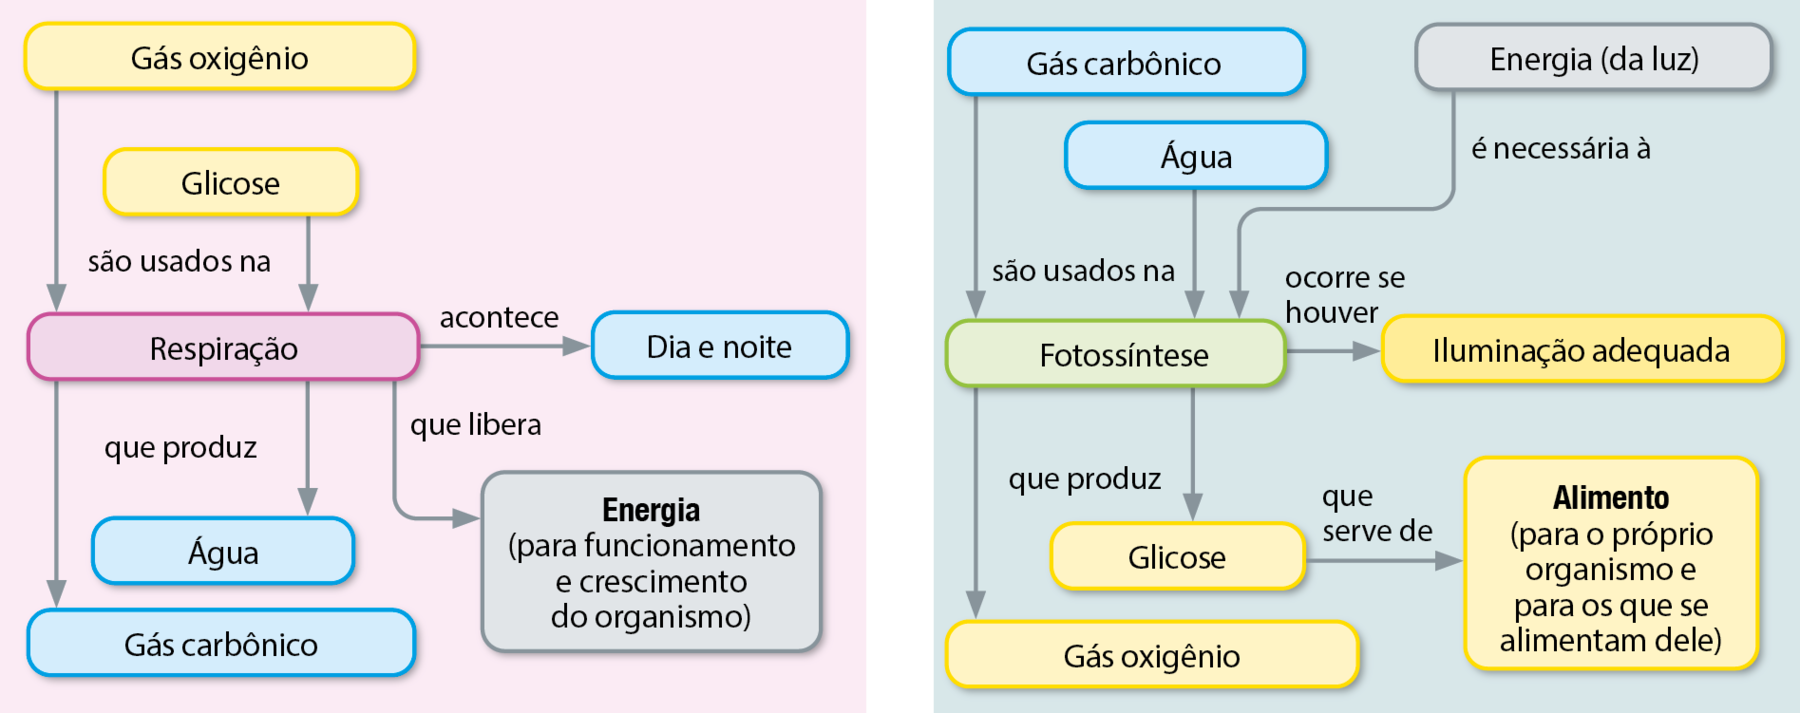 Fluxograma. Sete balões de texto, conectados por setas. Dois quadro amarelos (gás oxigênio; glicose), um quadro roxo (respiração), três quadros azuis (água, gás carbônico, dia e noite) e um quadro cinza (Energia (para funcionamento e crescimento do organismo)). Os elementos do fluxograma permitem os seguintes caminhos: Gás oxigênio e glicose são usados na respiração, que produz água e gás carbônico. Respiração (quadro roxo acontece dia e noite. Respiração que libera energia (para funcionamento e crescimento do organismo).  Fluxograma. Oito balões com texto, conectados por setas. Dois quadros azuis (gás carbônico, água), um quadro verde (Fotossíntese), um quadro cinza (Energia (da luz)), um quadro amarelo mais escuro (Iluminação adequada) e três quadros amarelo claro (glicose, gás oxigênio, alimento (para o próprio organismo e para os que se alimentam dele). Os elementos do fluxograma permitem os seguintes caminhos: Gás carbônico e água são usados na fotossíntese, que produz glicose e gás oxigênio. Glicose que serve de alimento (para o próprio organismo e para os que se alimentam dele). Energia (da luz) é necessária à fotossíntese, ocorre se houver iluminação adequada.